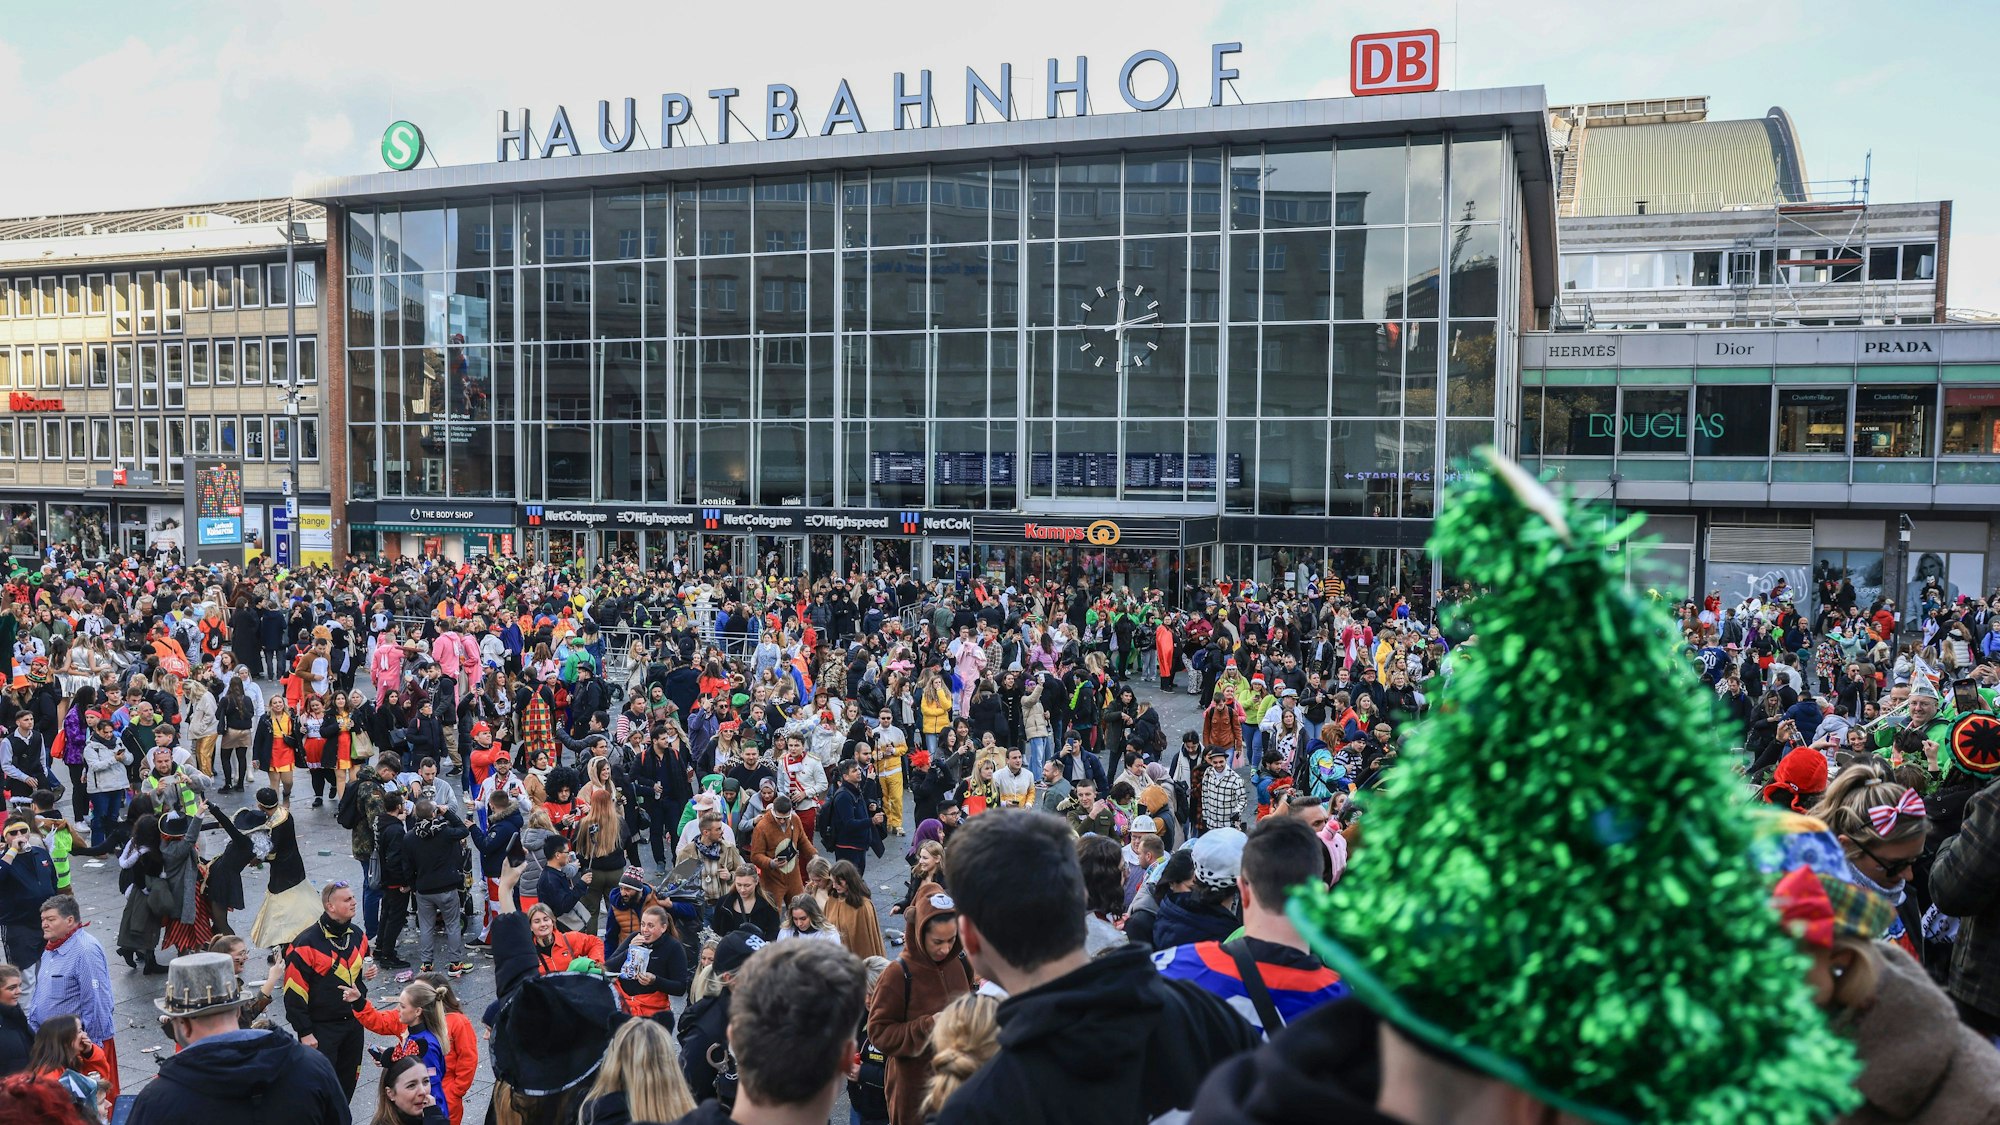 Karnevalisten stehen dicht gedrängt vor dem Kölner Hauptbahnhof.